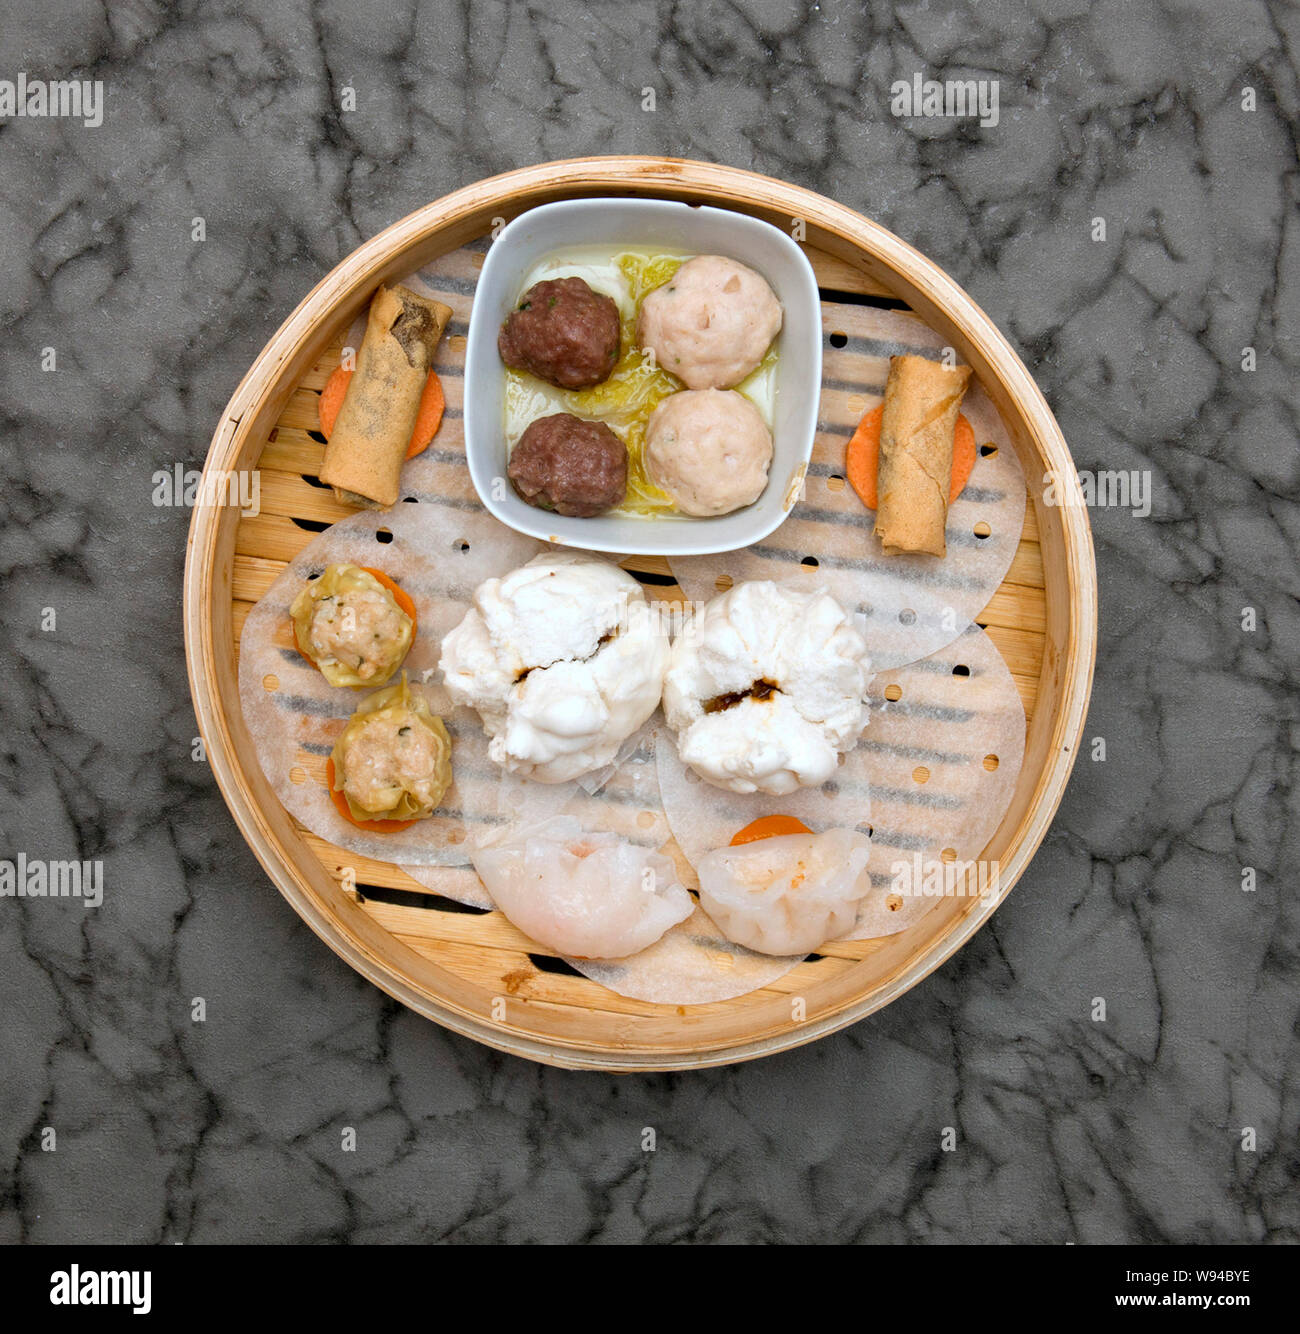 La cuisine chinoise. Dim sum platter Banque D'Images